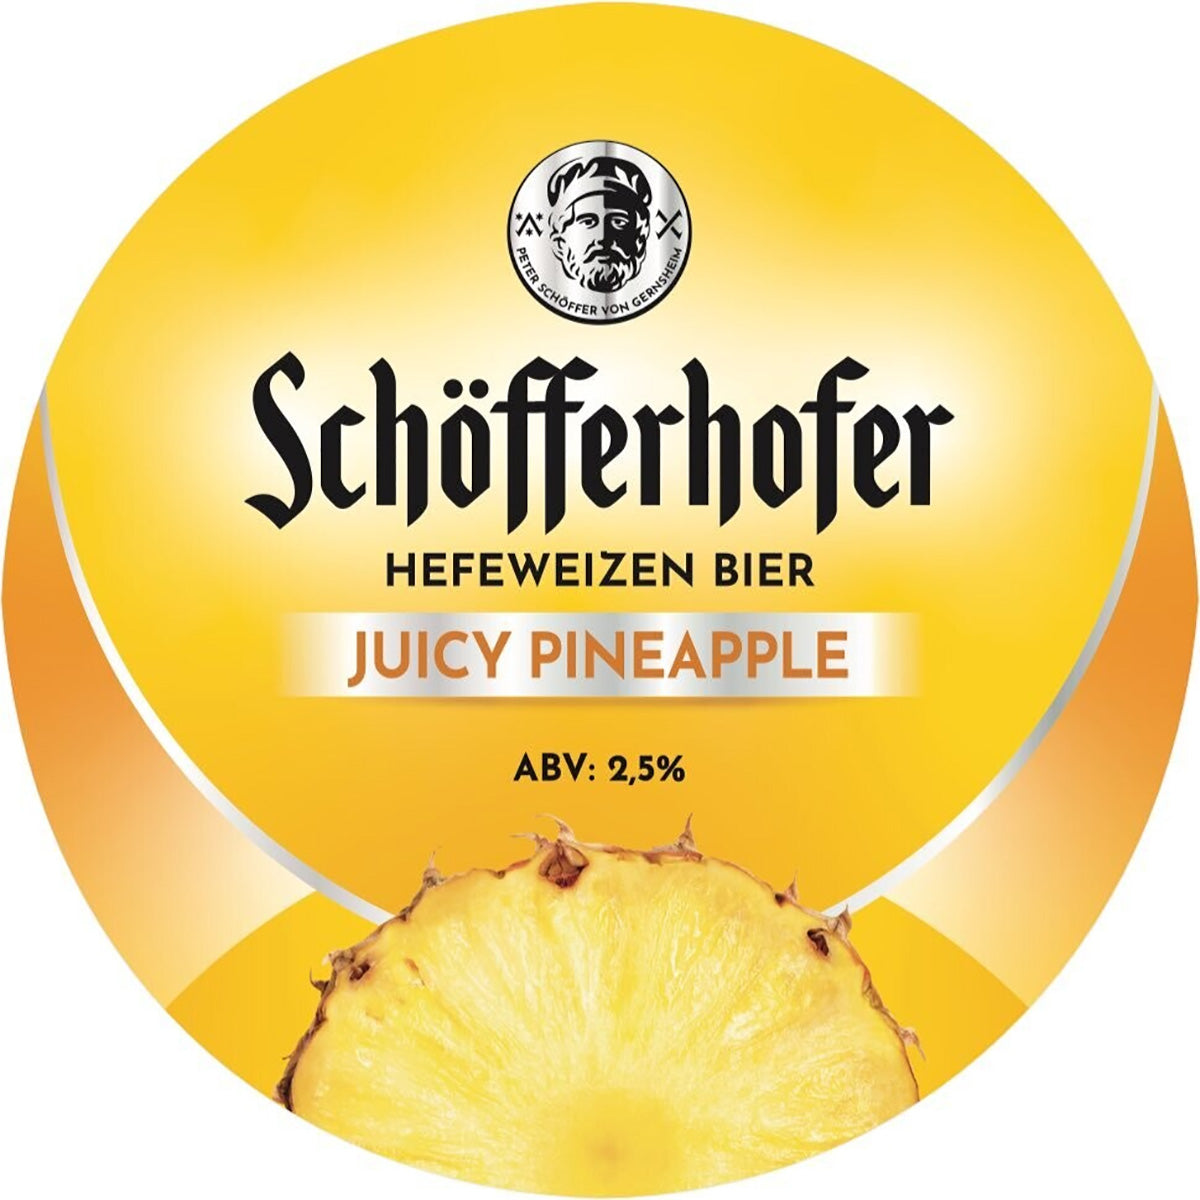 Schofferhofer Badge